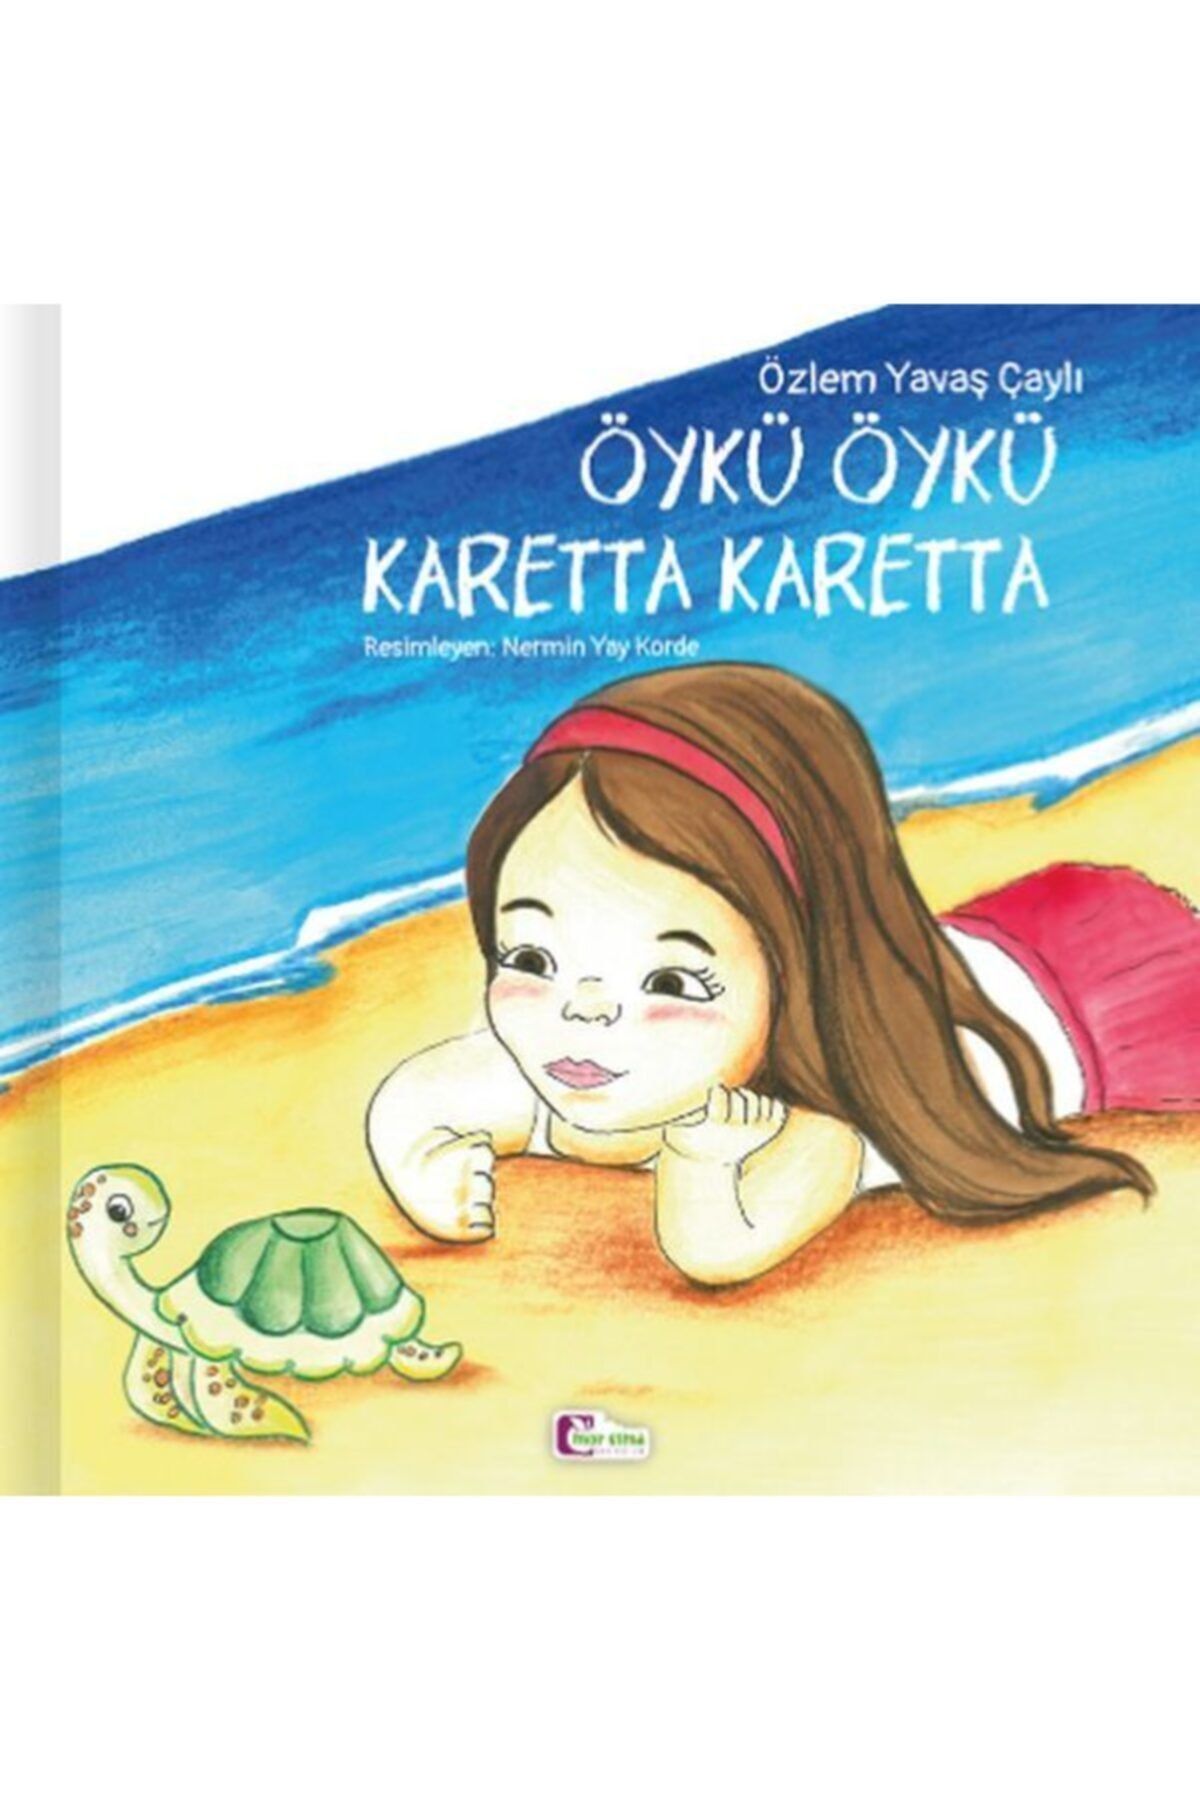 Mor Elma Yayıncılık Öykü Öykü Karetta Karetta